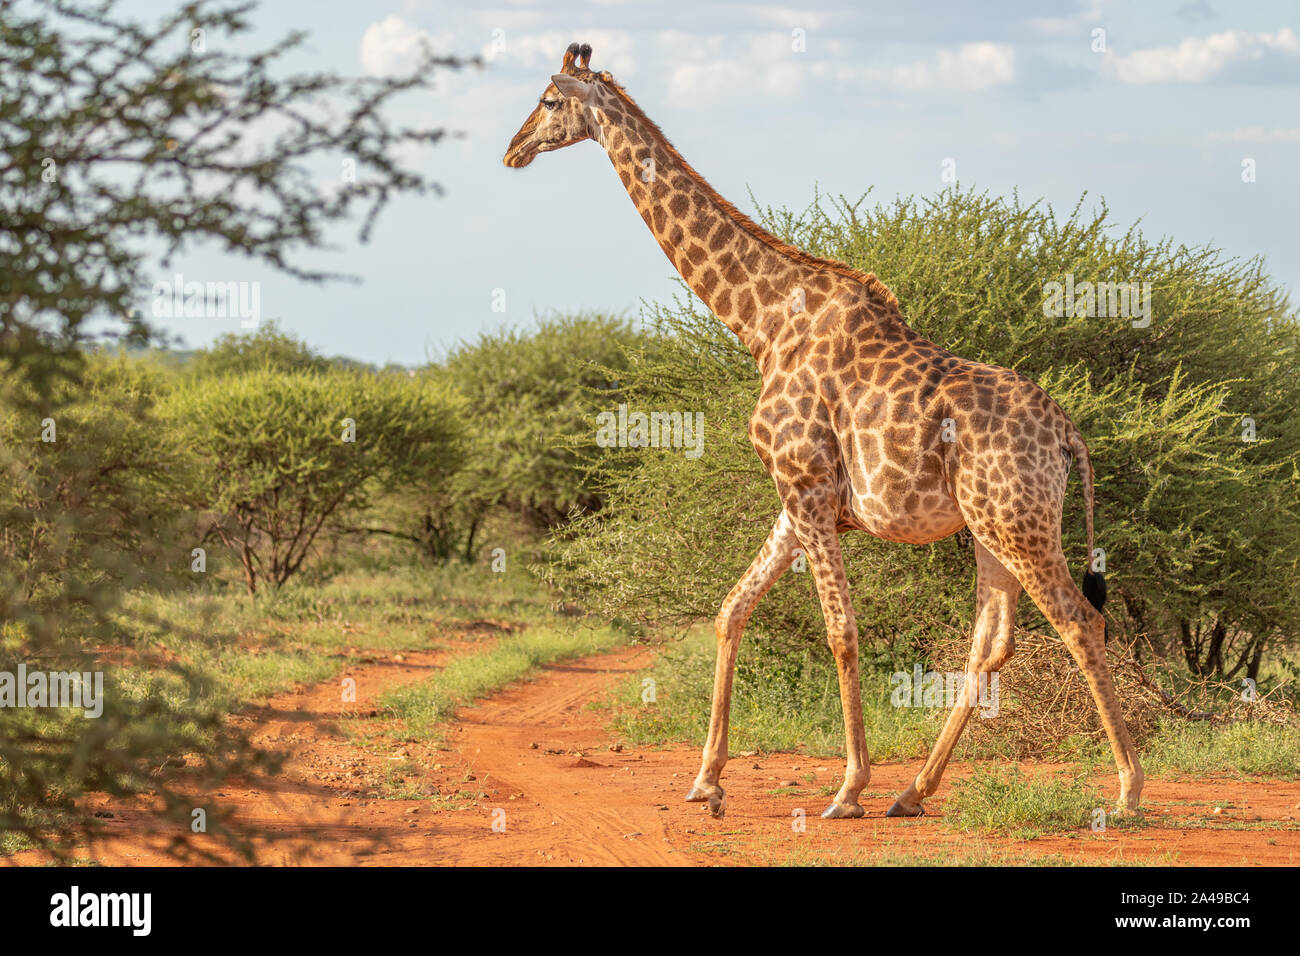 Une girafe Giraffa camelopardis () marche à travers la savane entre les plantes, Madikwe Game Reserve, Afrique du Sud. Banque D'Images